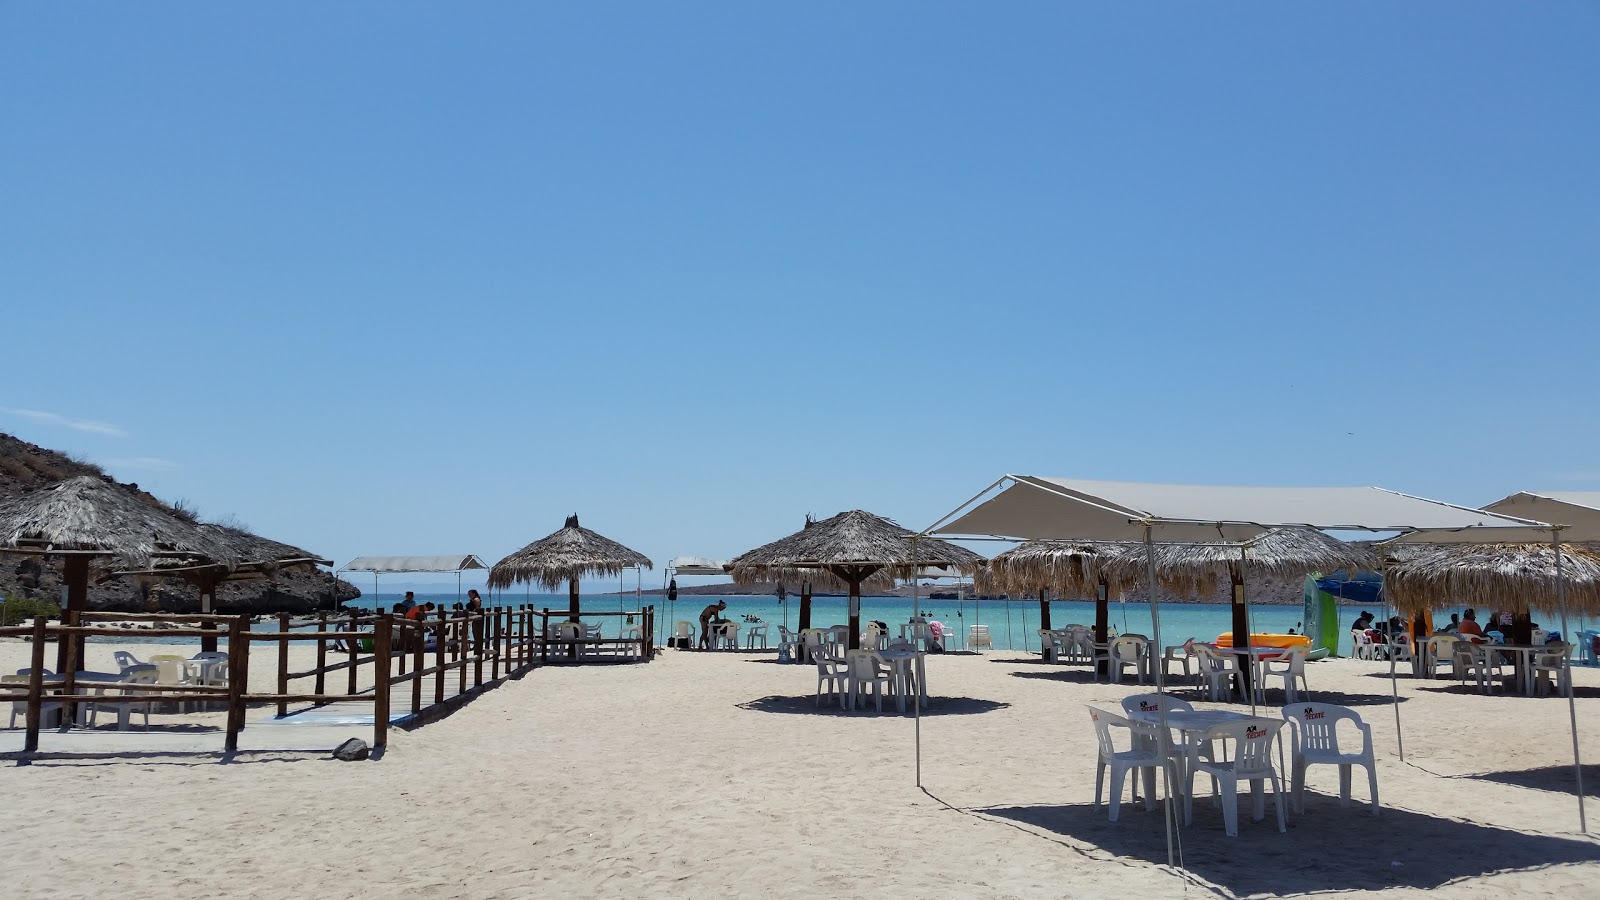 Playa El Tesoro'in fotoğrafı imkanlar alanı